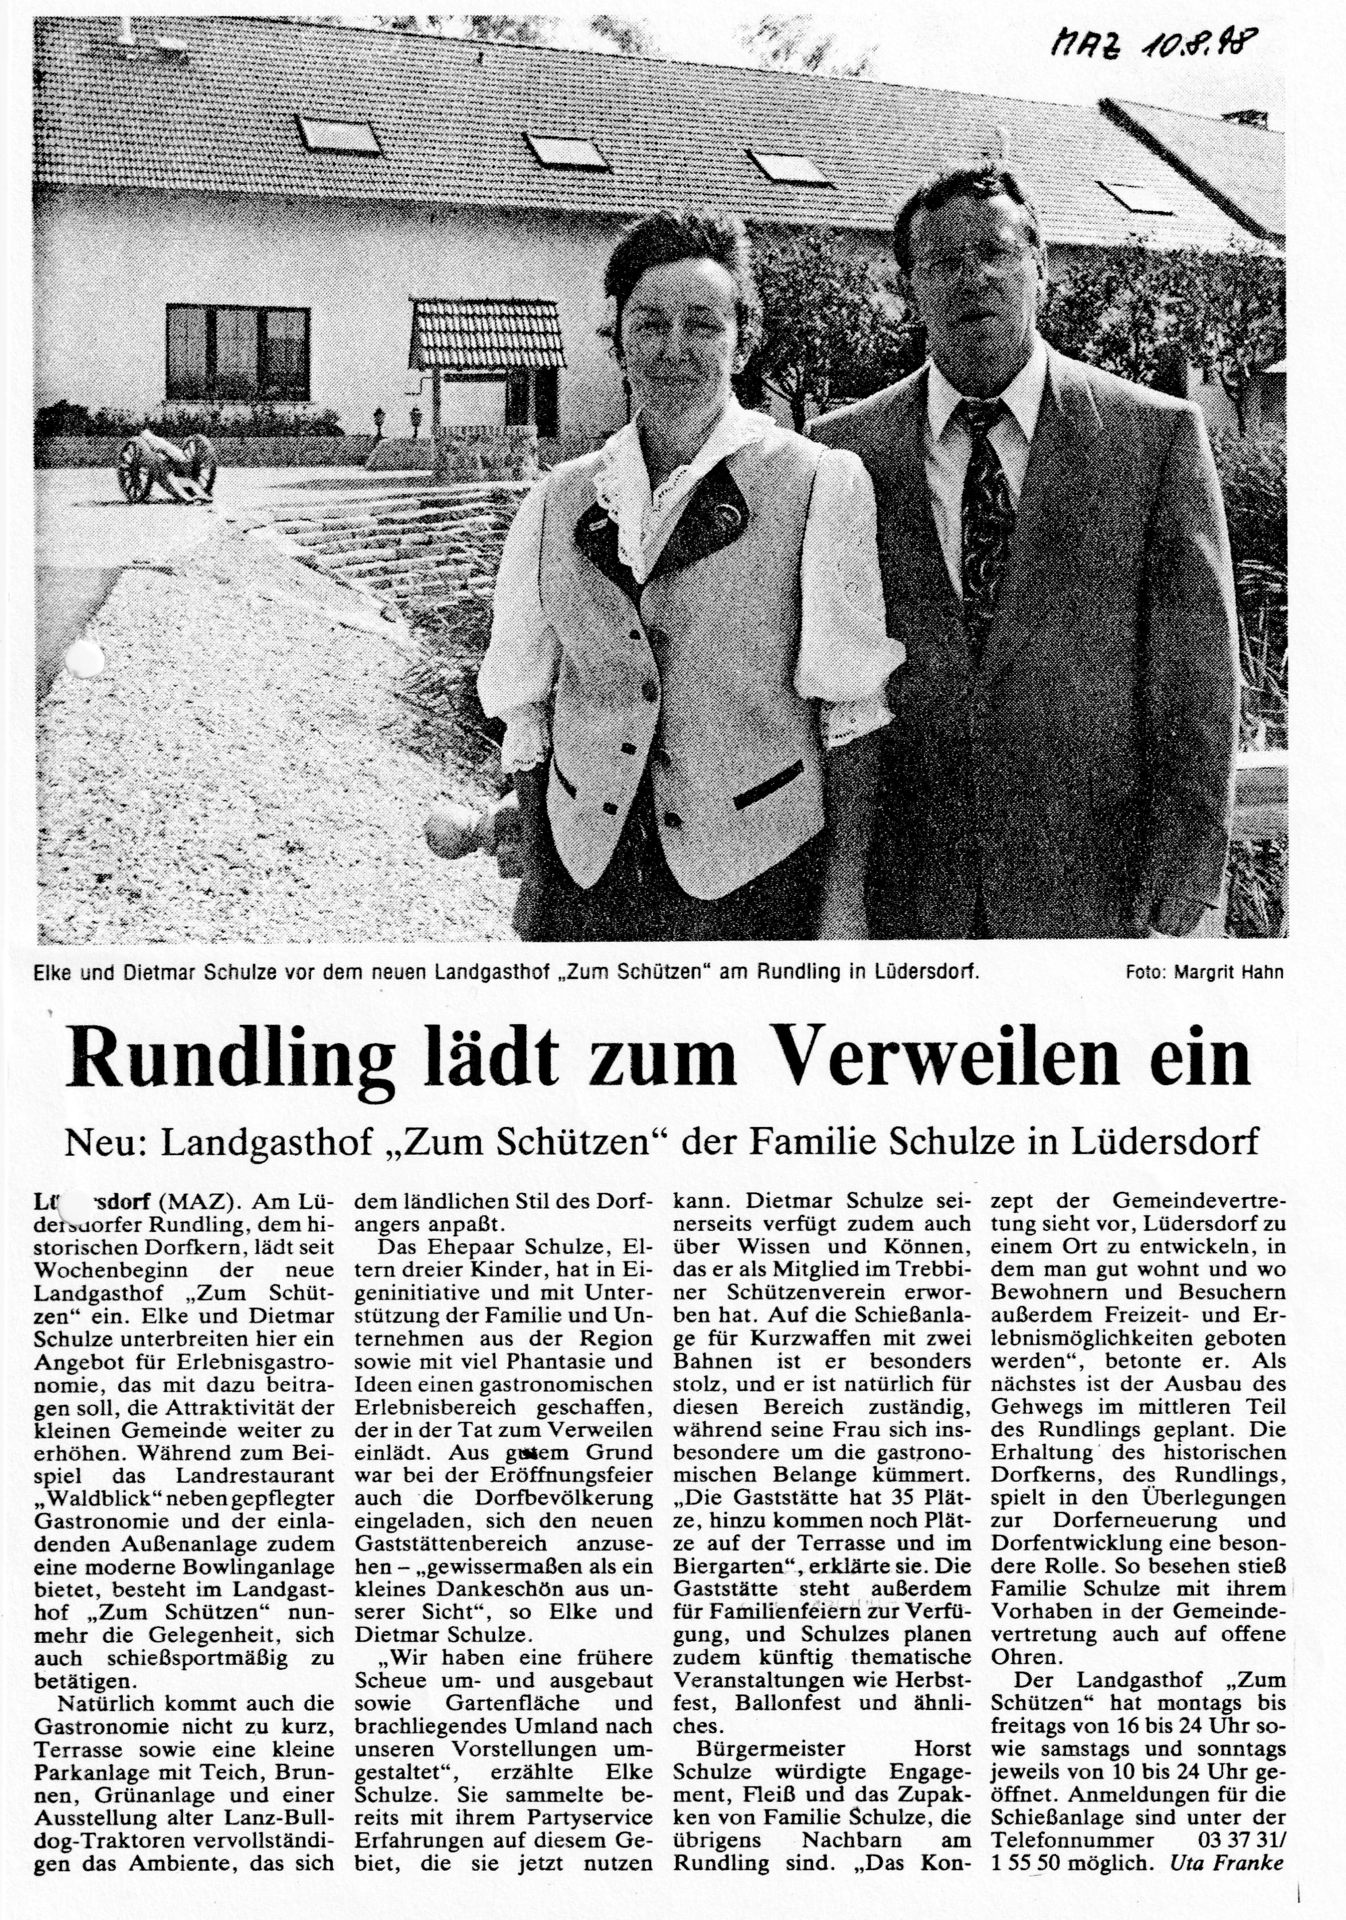 Pressemeldung in der MAZ vom 10.08.1998 "Rundling lädt zum Verweilen ein" von Uta Franke